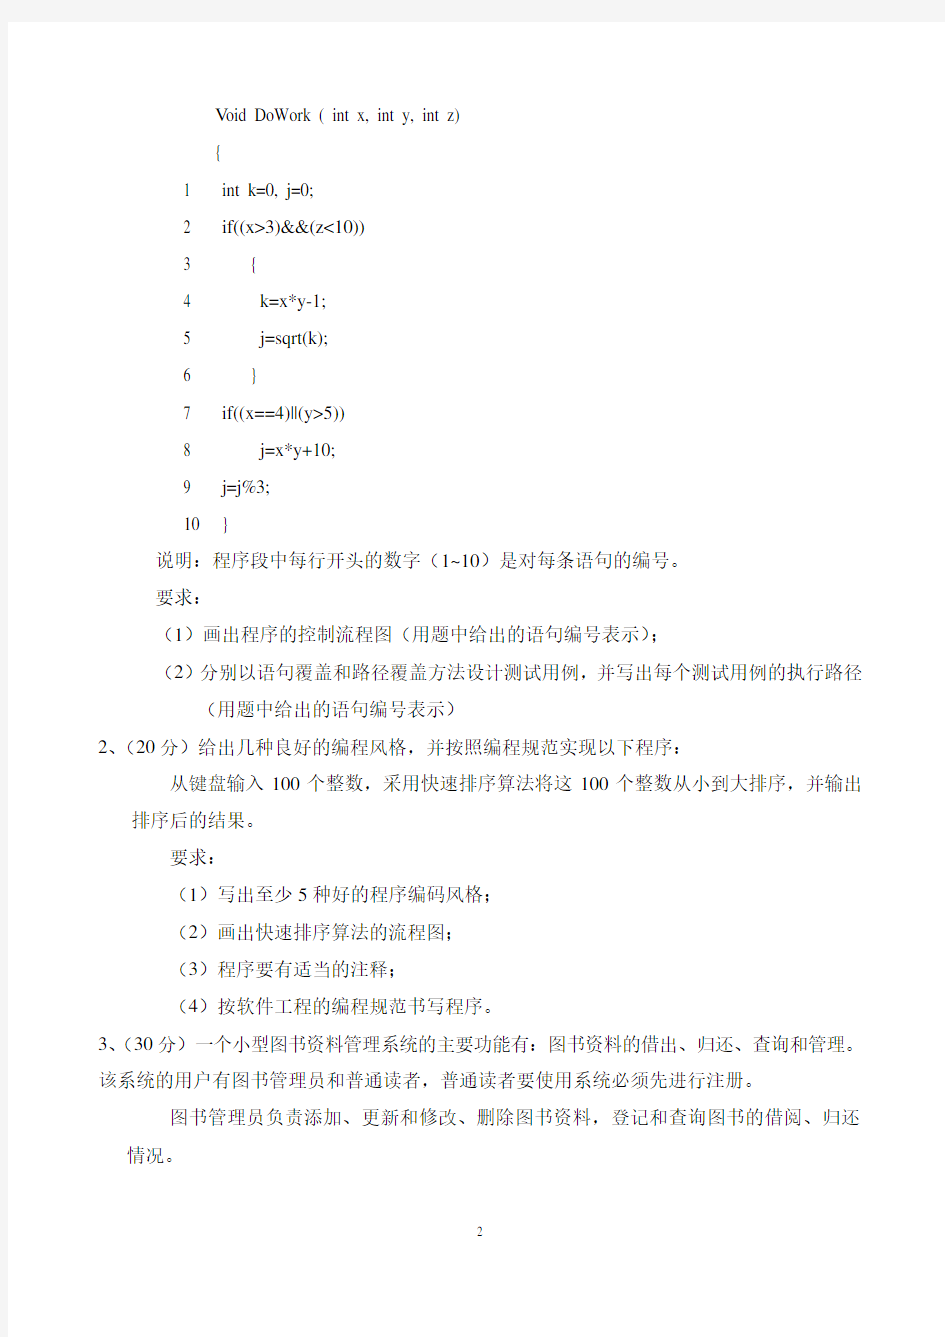 北京科技大学2013年硕士学位研究生入学考试试题(软件工程)